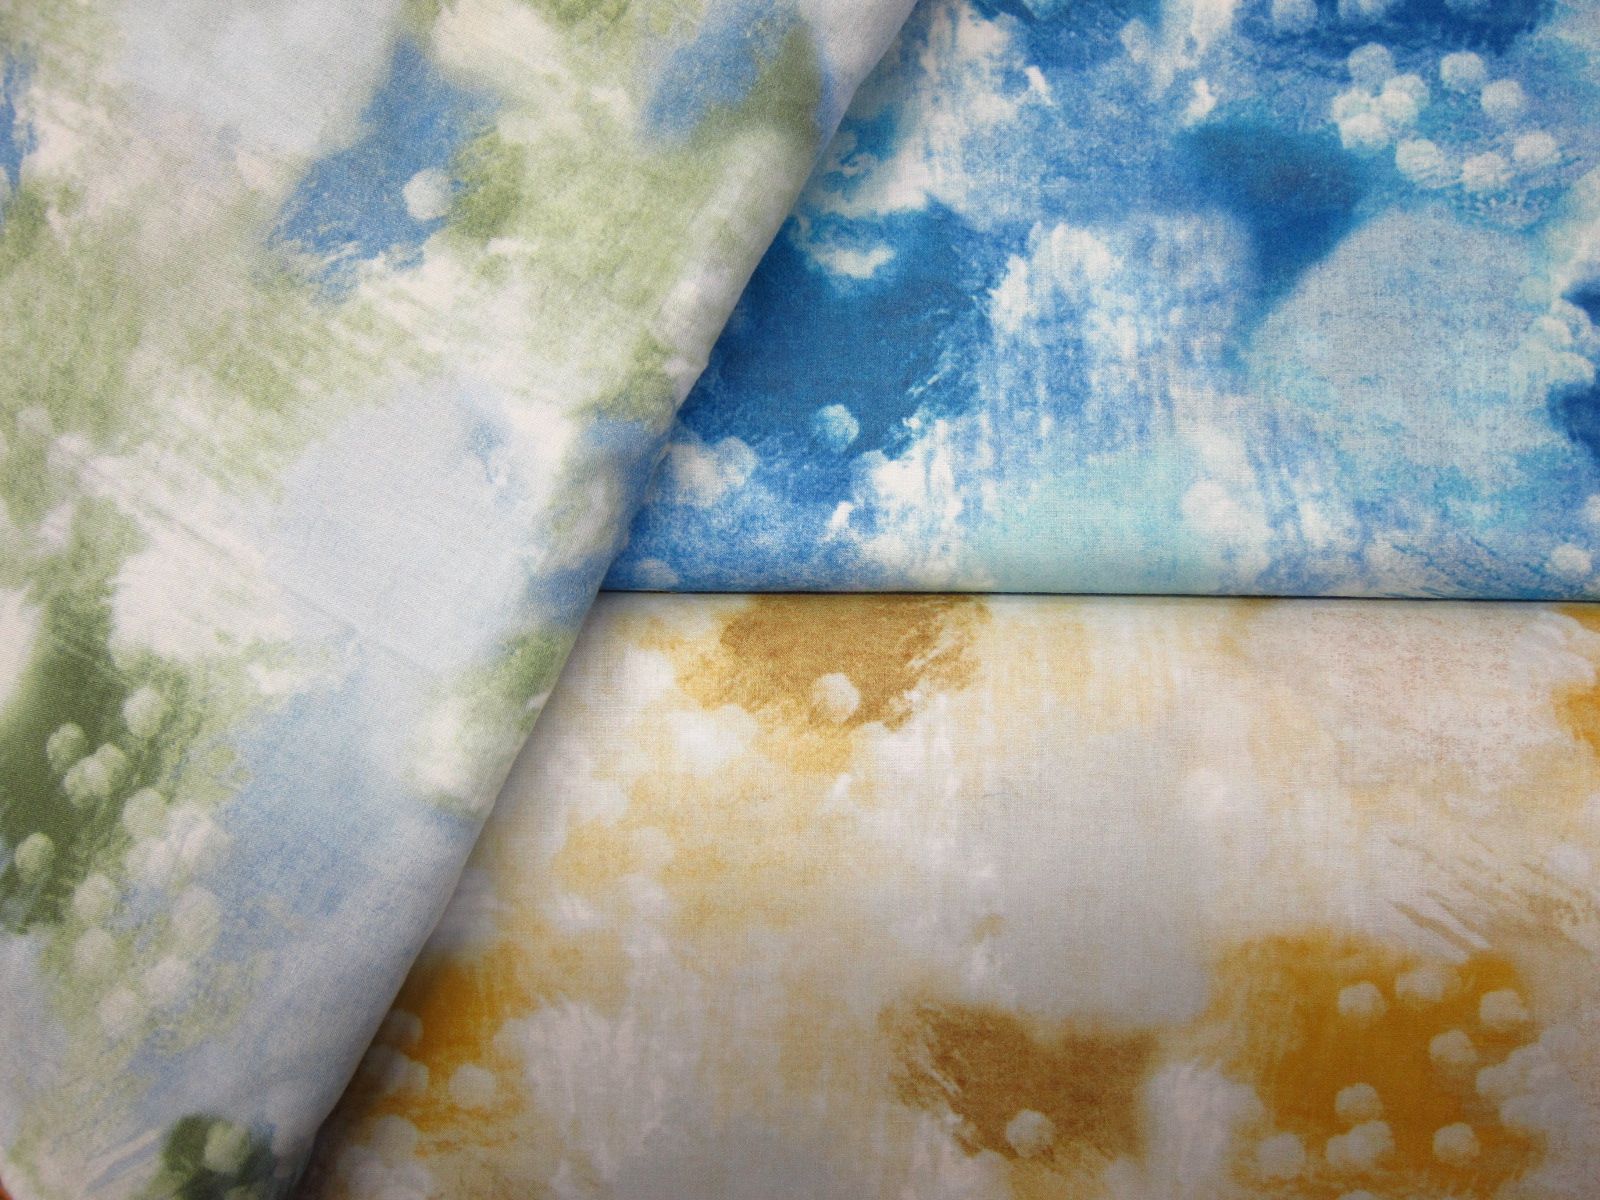 極度舒適輕柔60支薄綿布-雲彩-綠、藍、黃-100%純綿、台灣製造